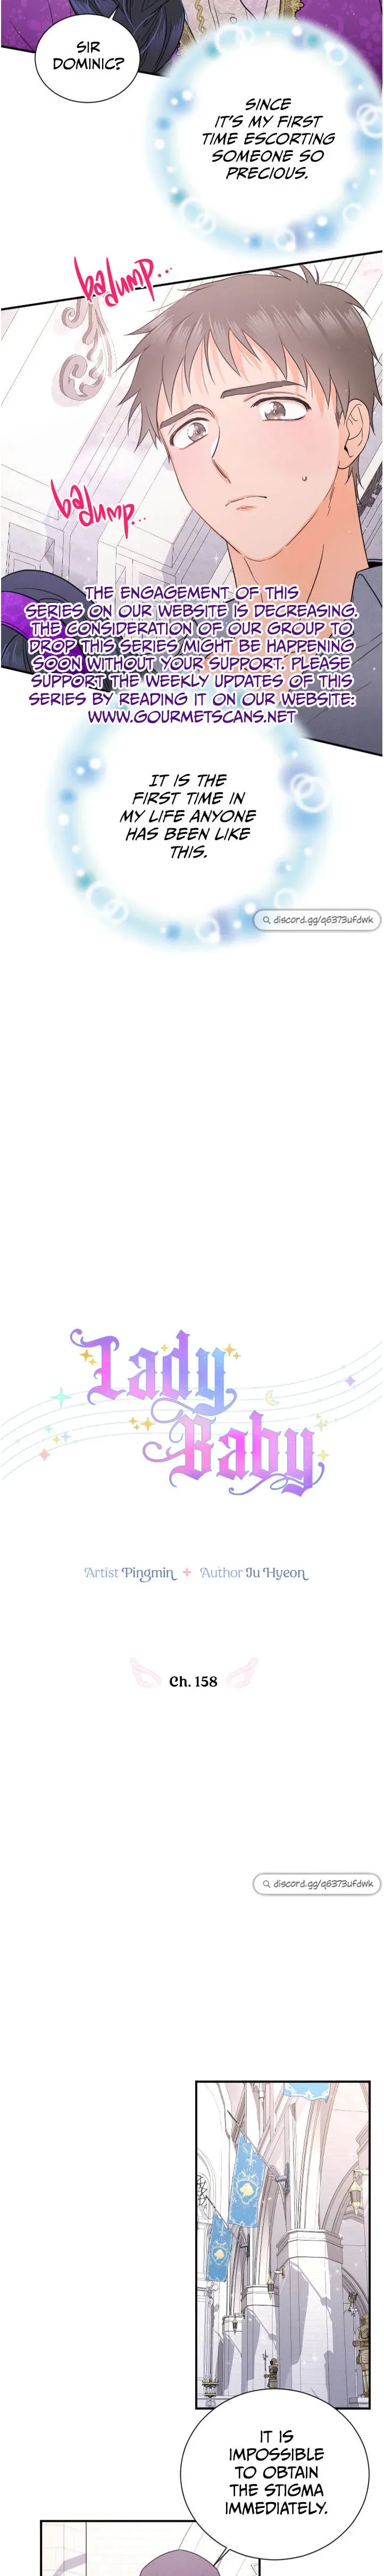 Lady Baby - 158 page 3-de2b65fb